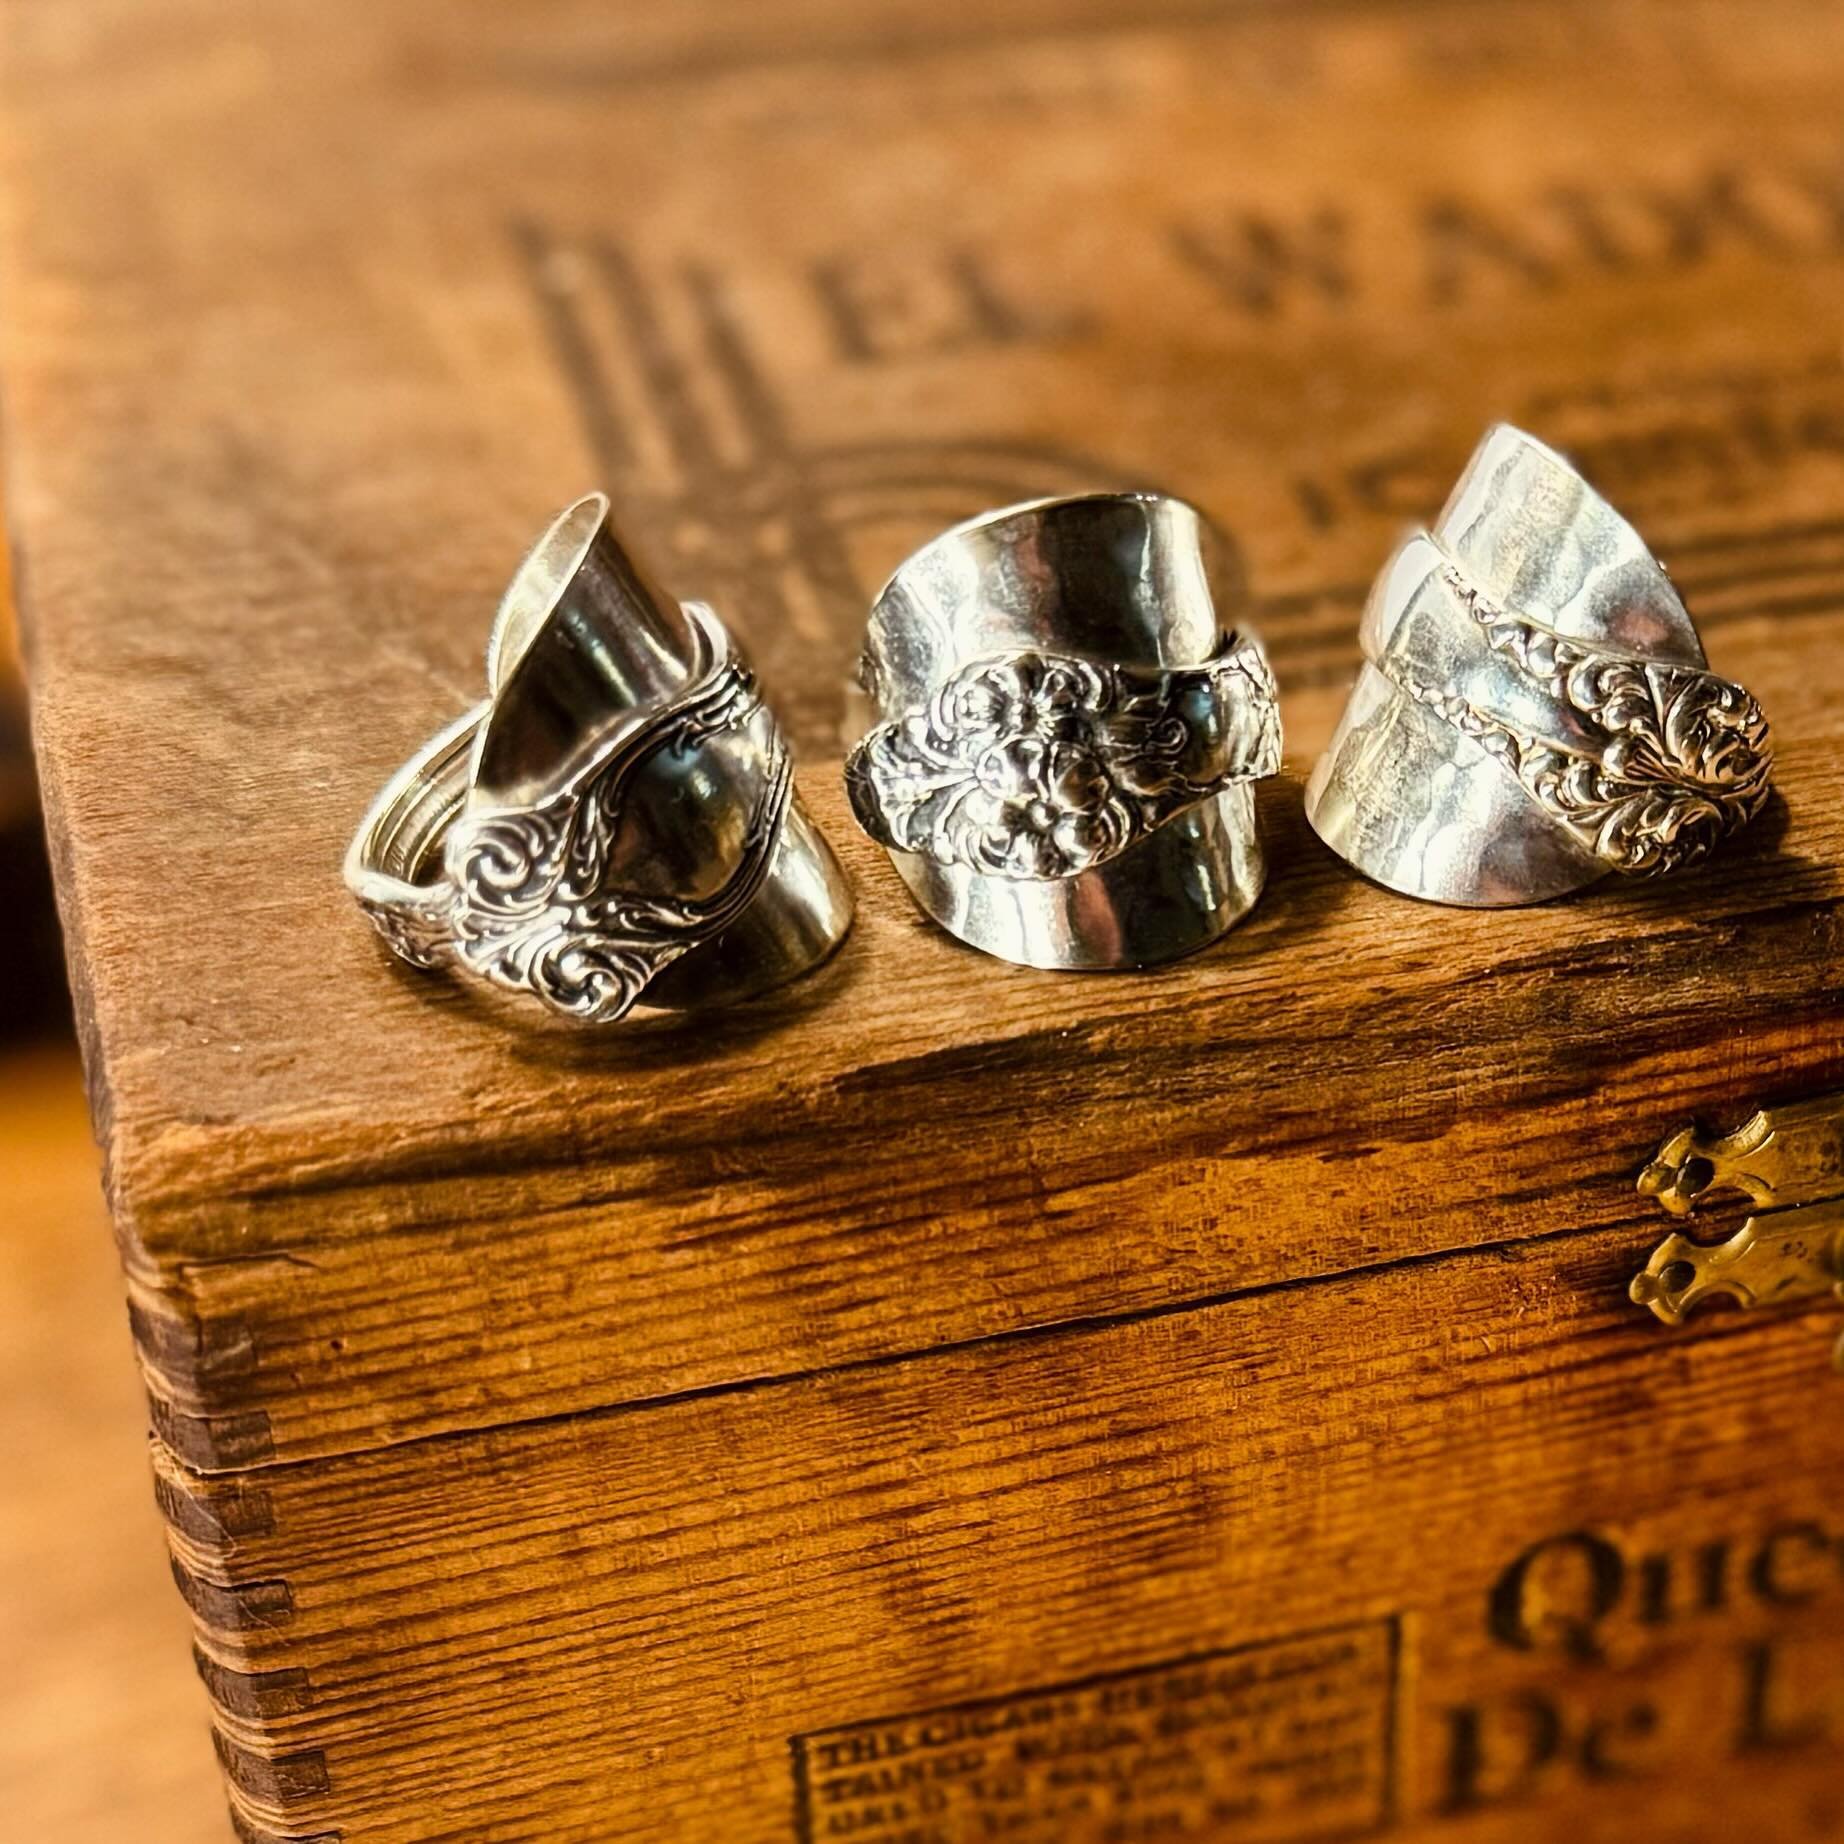 These&hellip;&hellip;

Vintage demitasse spoon rings🥄💫

#silverwearbymisty
#spoonrings
#rings
#vintage
#sustainablefashion 
#handmade
#midwestmakers